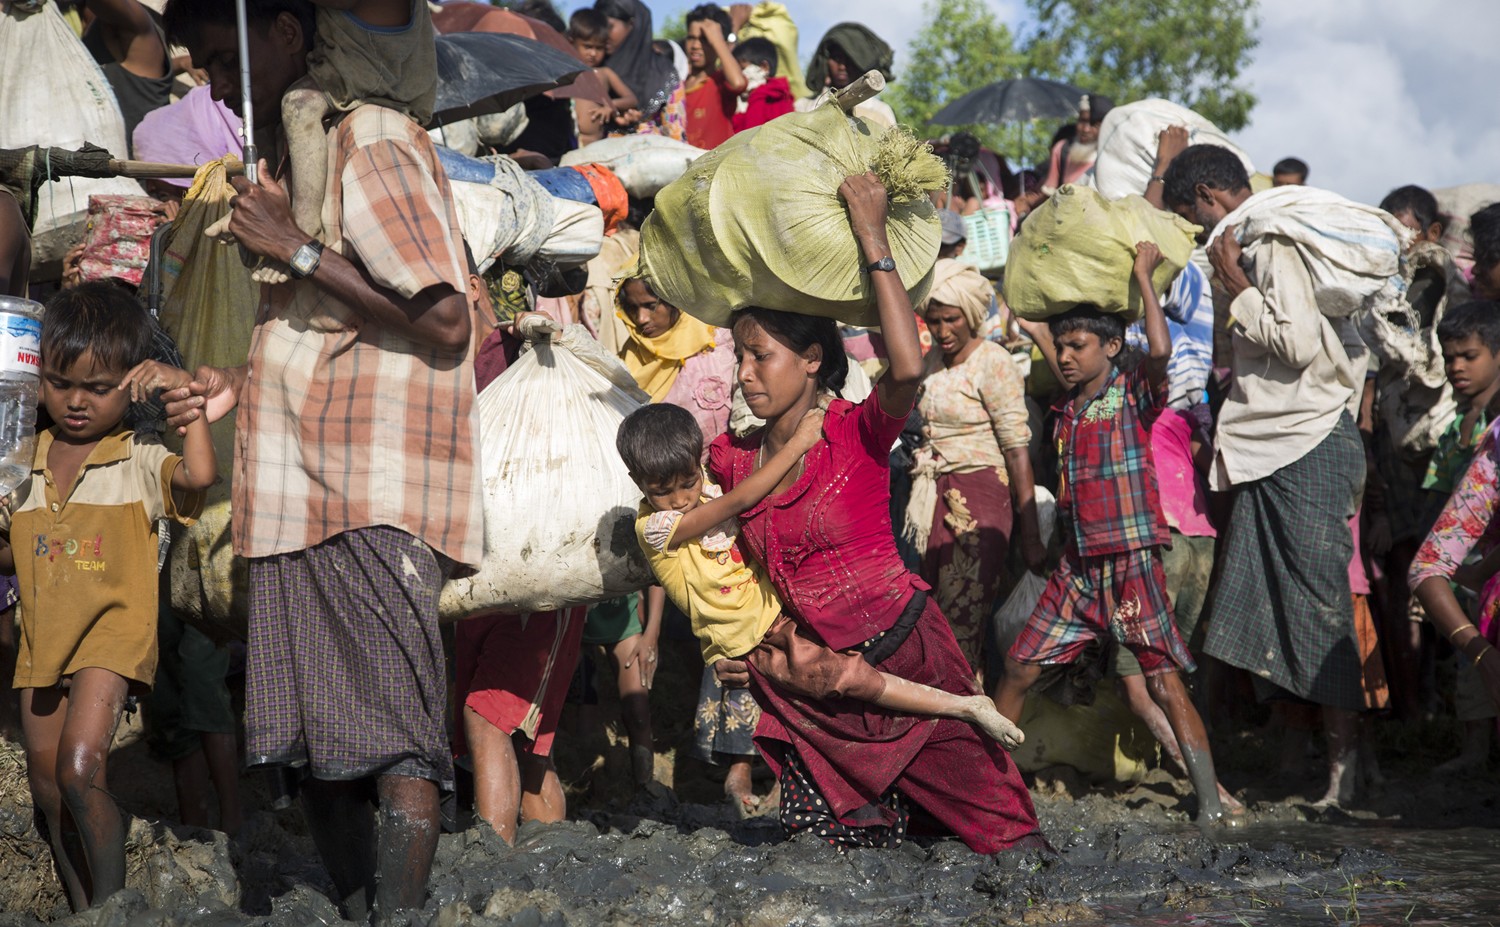 Os muçulmanos Rohingya, de Mianmar, fogem para Bangladesh após enfrentar uma perseguição brutal que, segundo autoridades da ONU, pode resultar em crimes contra a humanidade. (Foto: ACNUR / Roger Arnold )